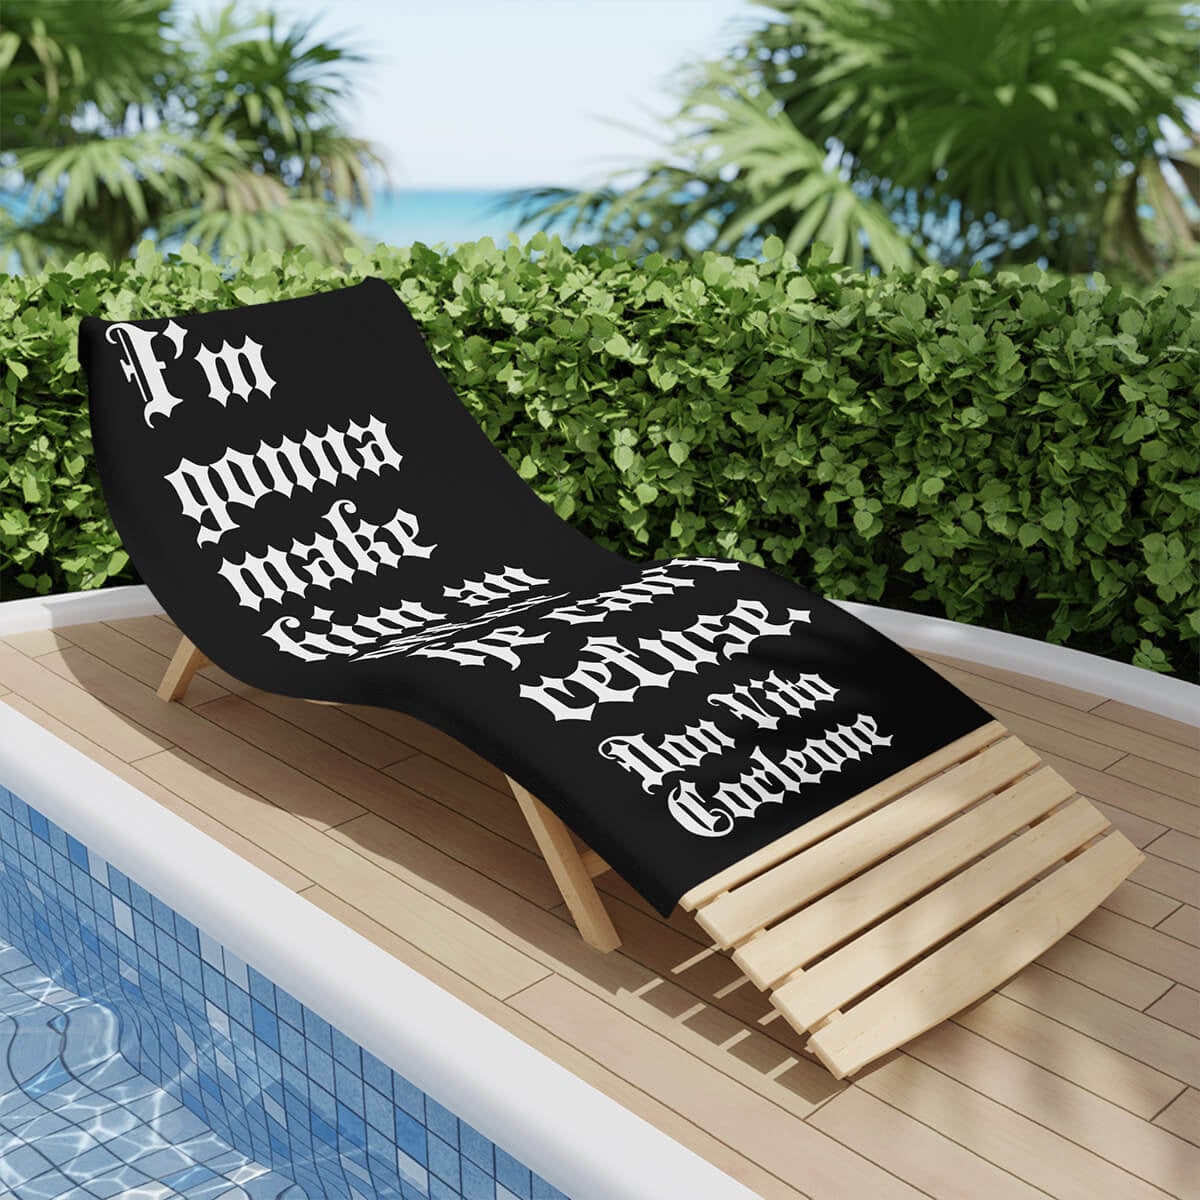 Don Vito Italian Mafia Business Quote Mobster Beach Towel